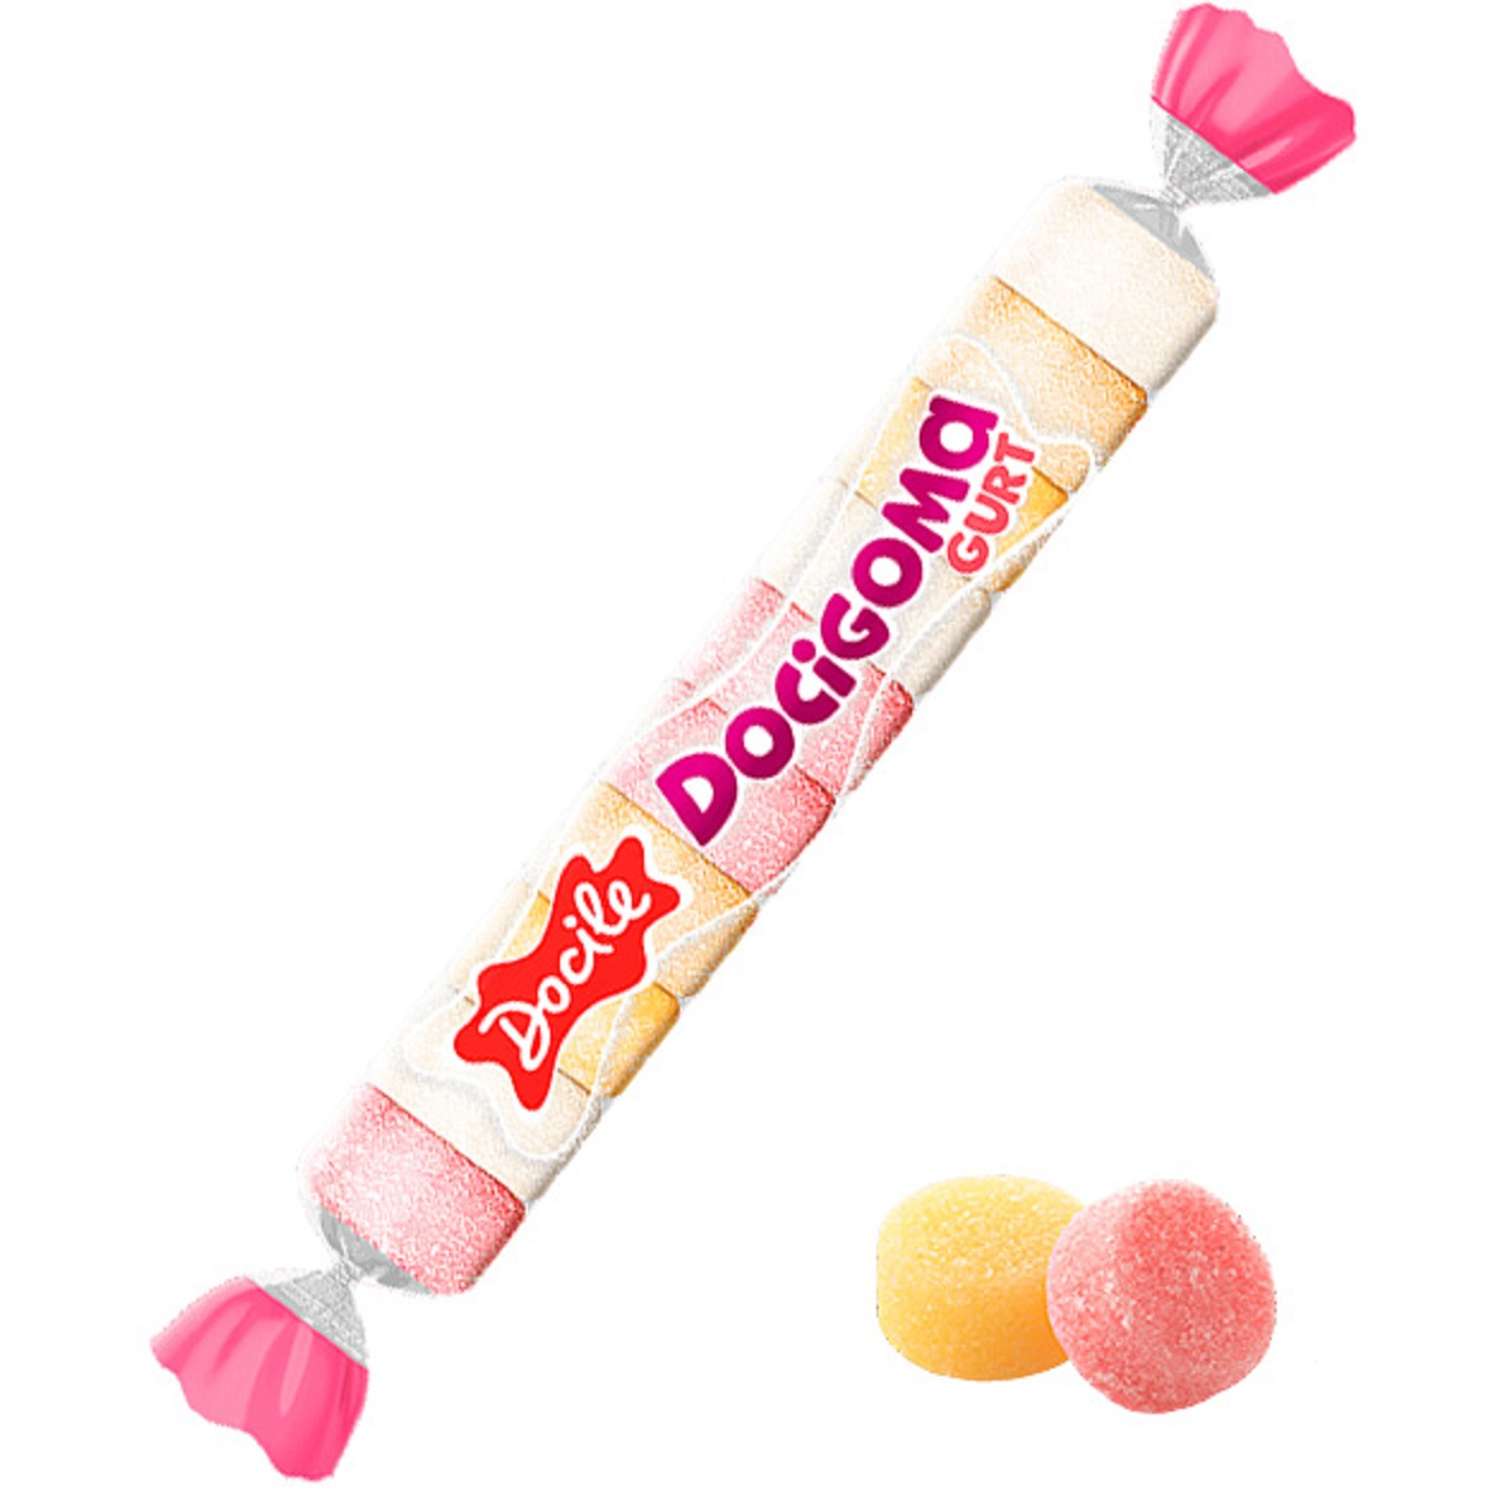 Жевательный мармелад Docile Docigoma yogurt rolls Йогуртовые трубочки 30г - фото 1